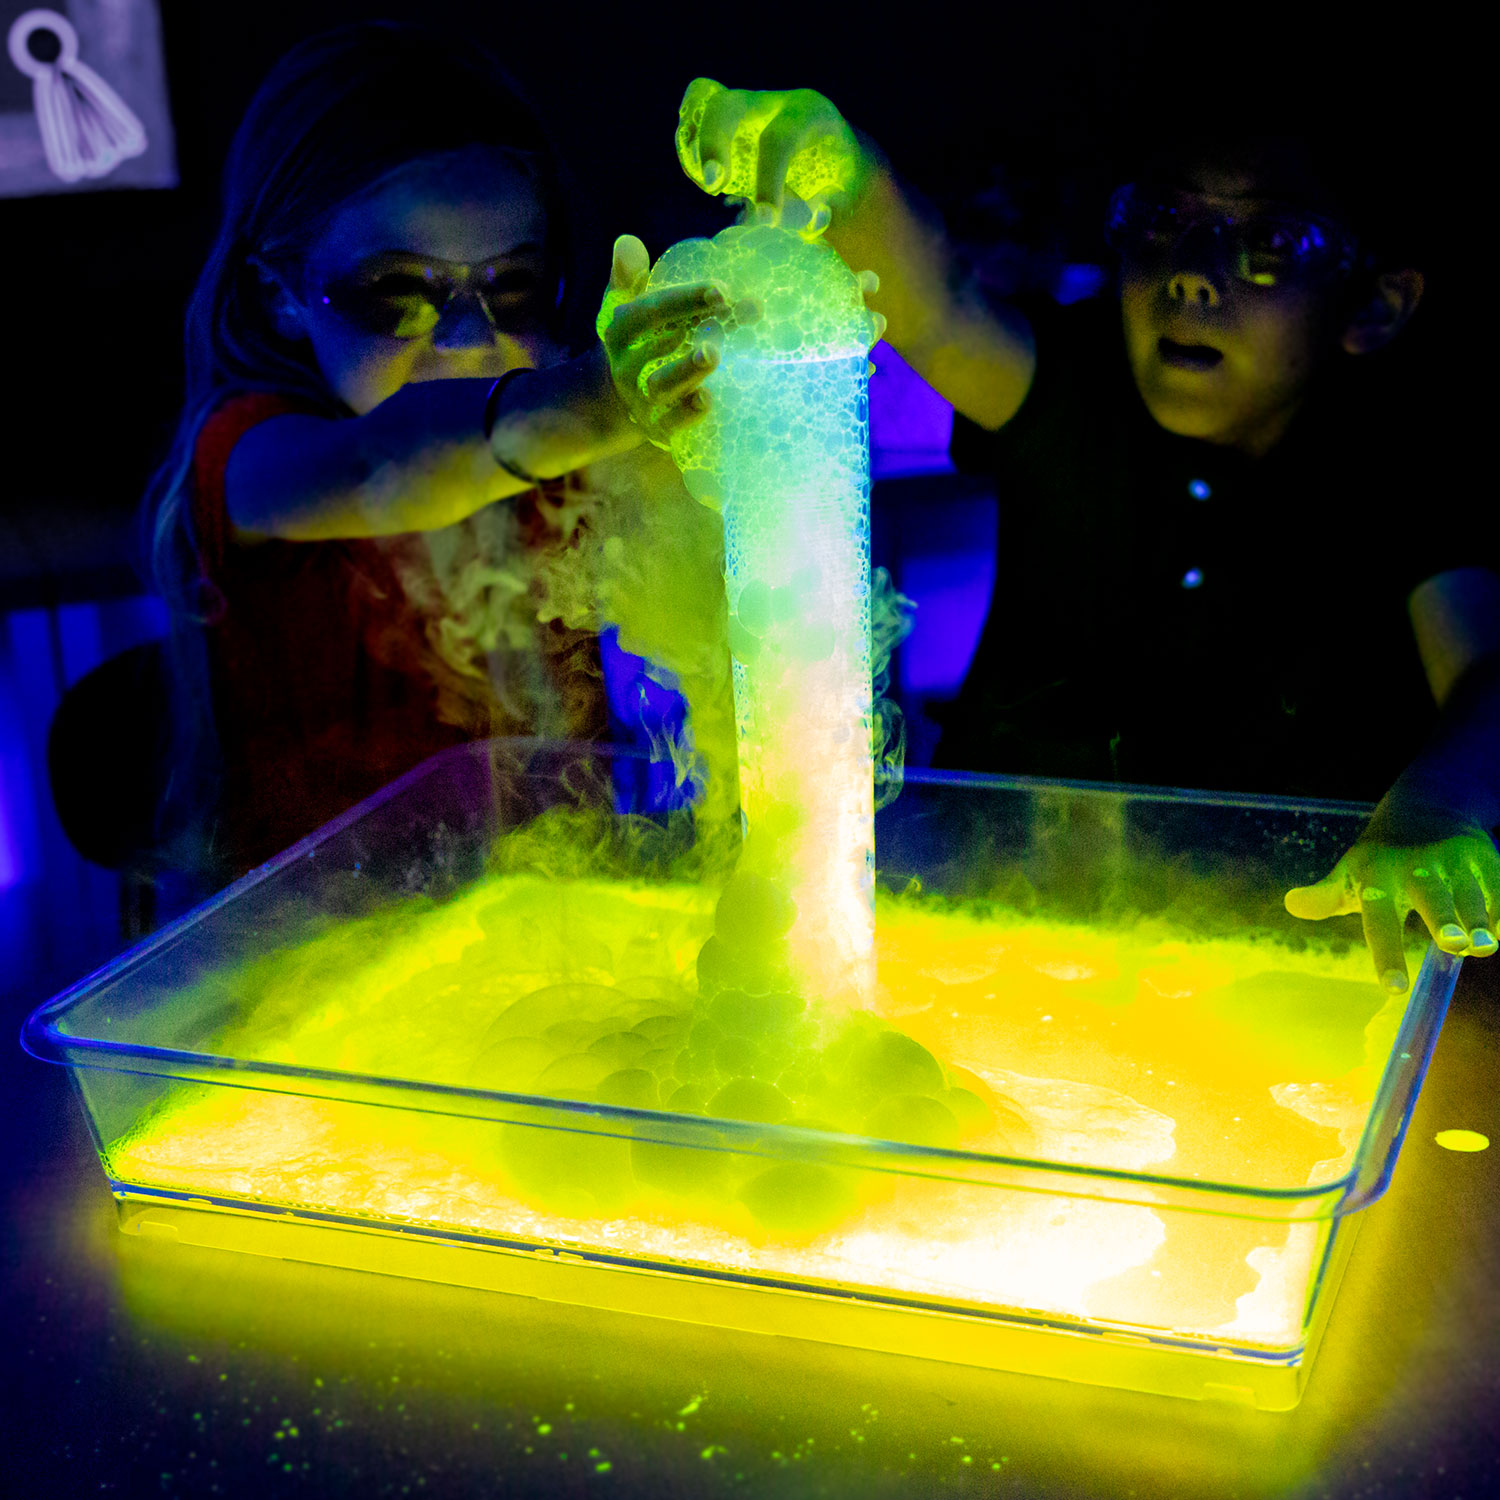 The Ultimate Dry Ice Science Kit - Steve Spangler Science